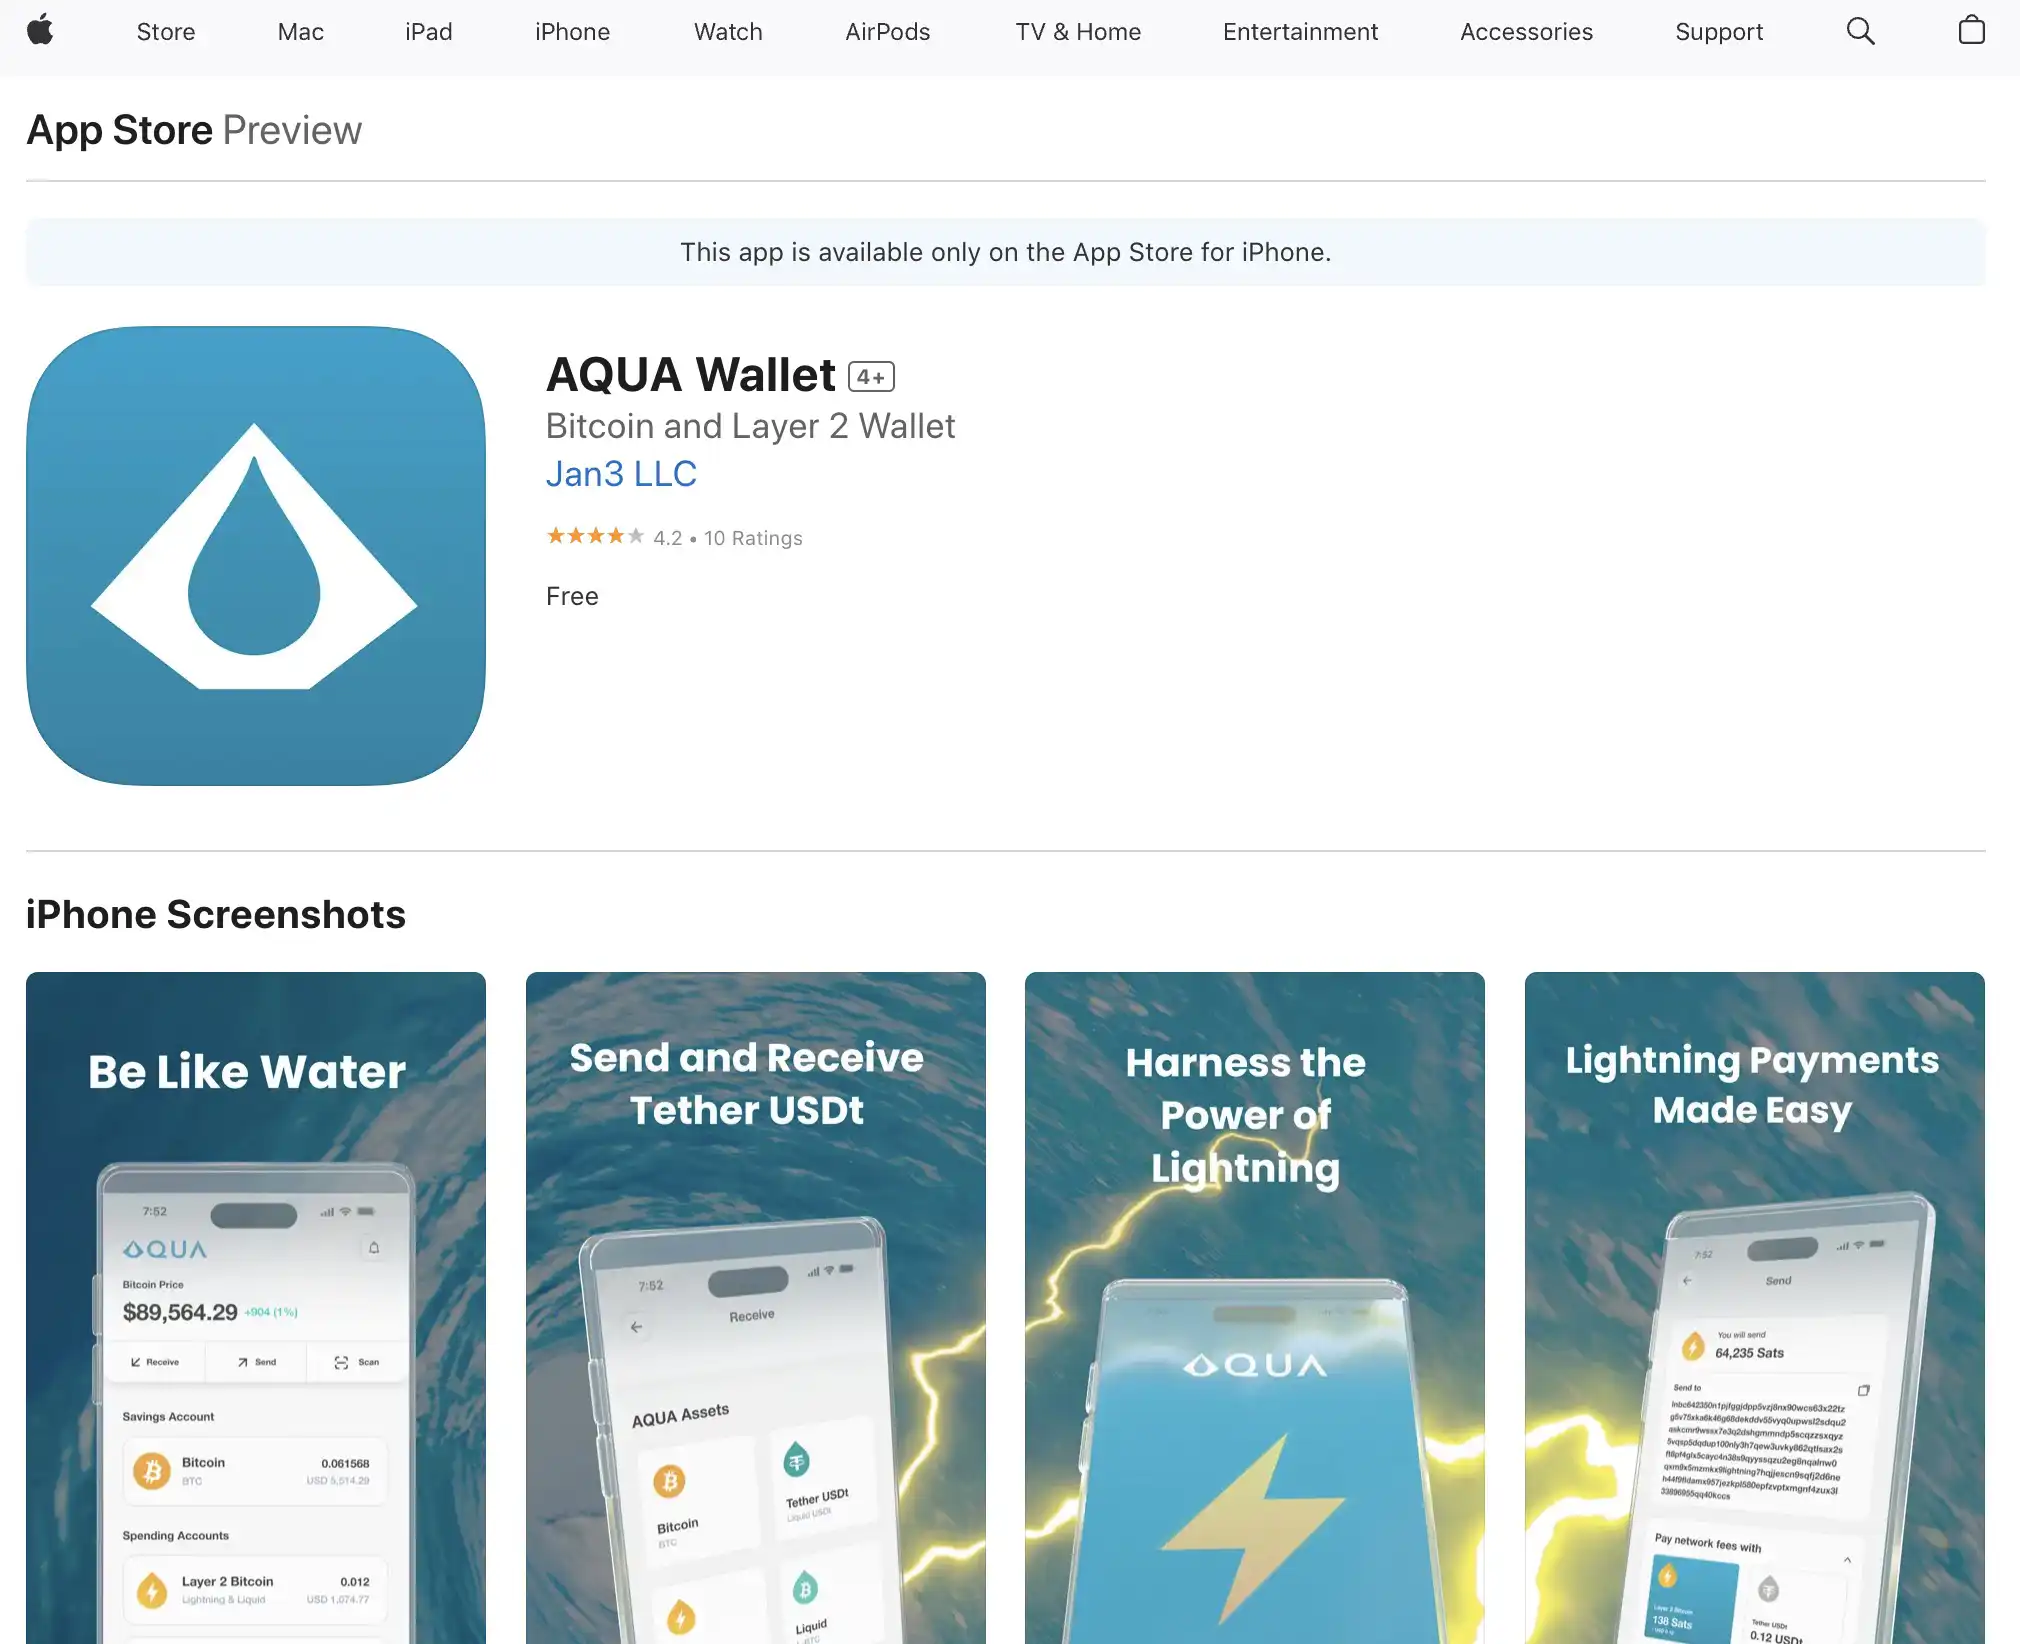 AQUA Wallet App Store Download